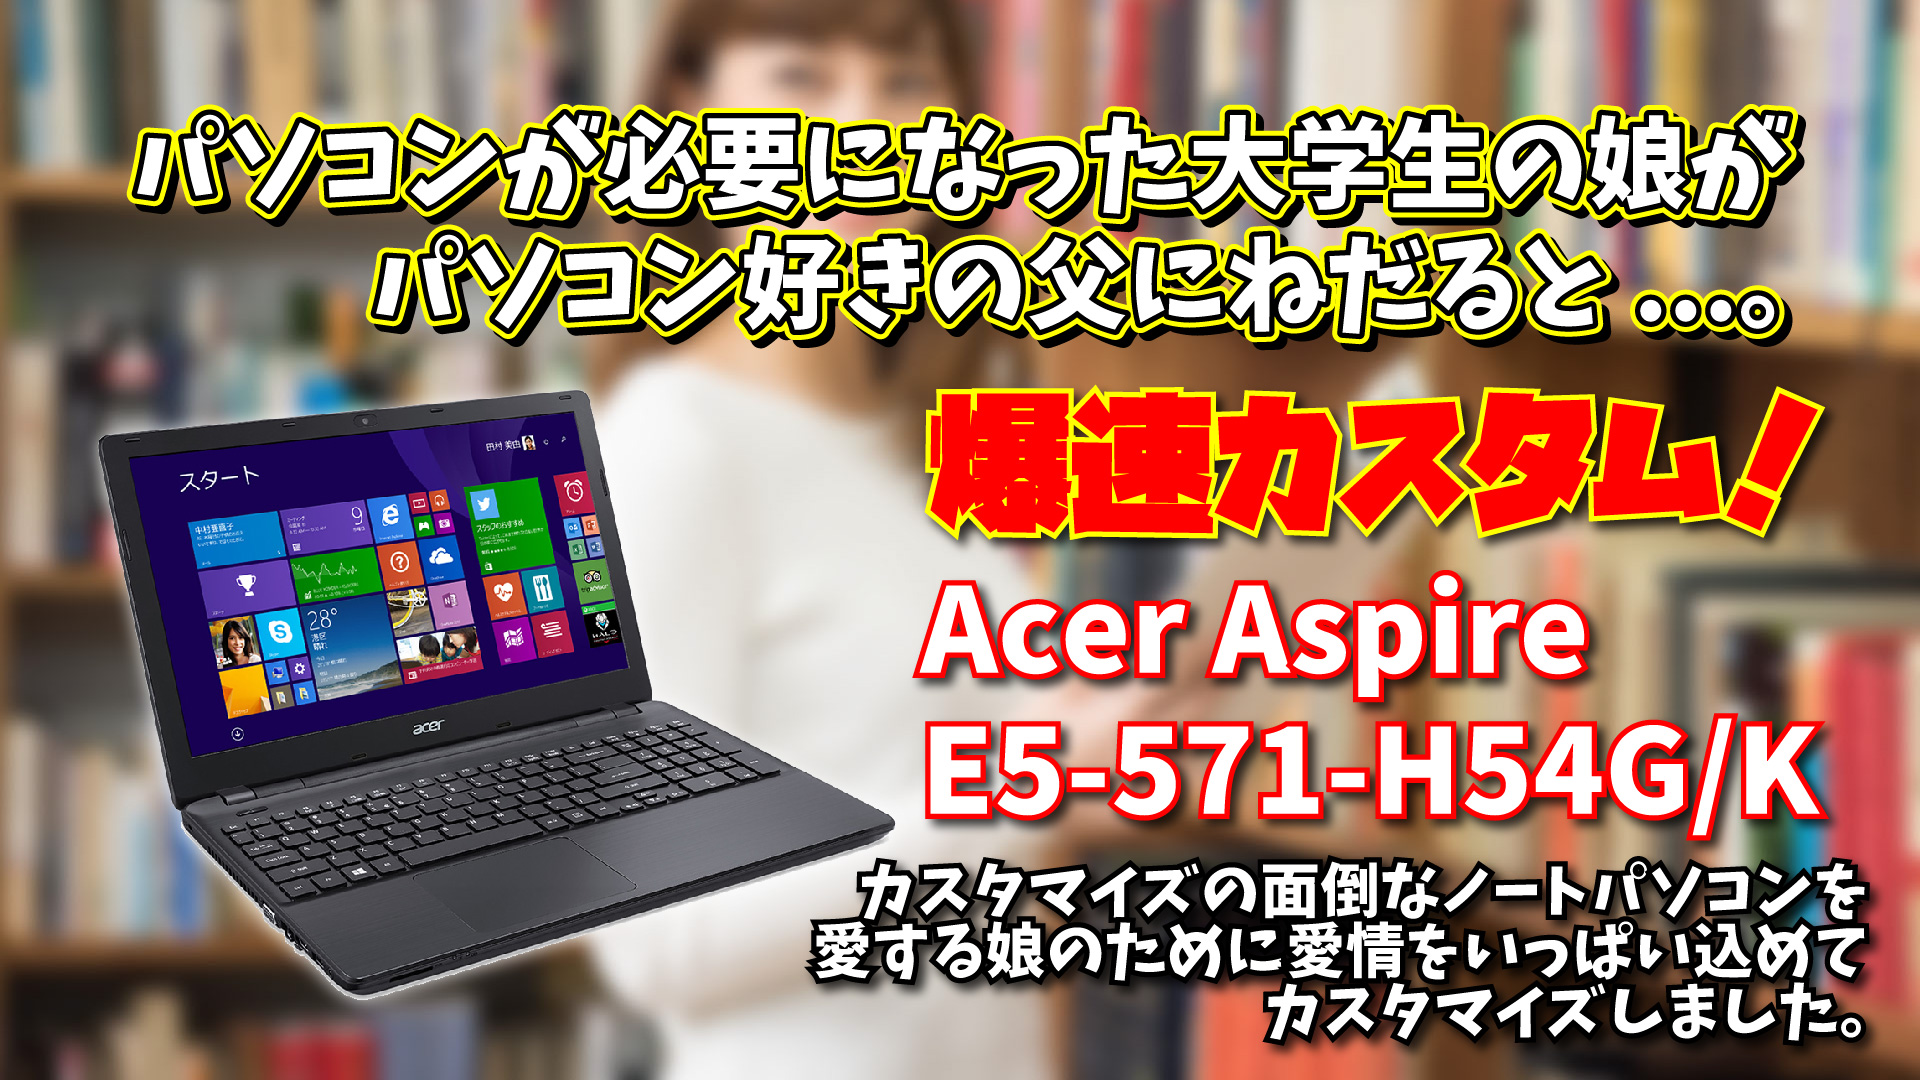 Acer Aspire E5-571-H54G/K: カスタマイズの面倒なノートPCを娘のために愛情込めてカスタマイズしました。